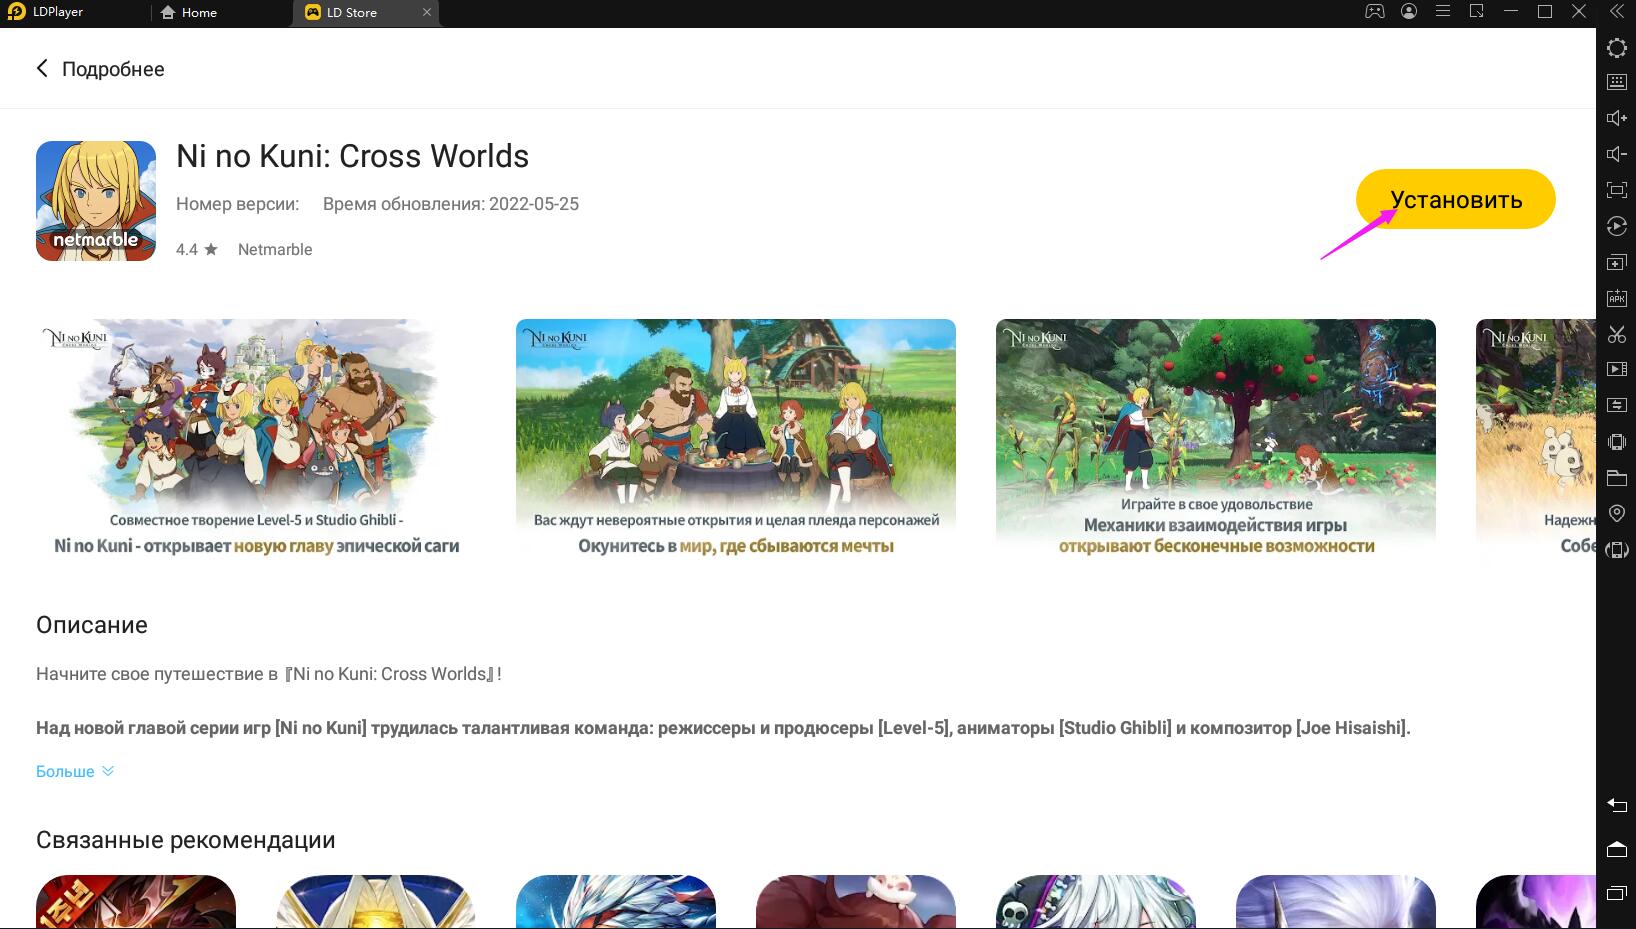 Играть в Ni no Kuni: Cross Worlds бесплатно на ПК